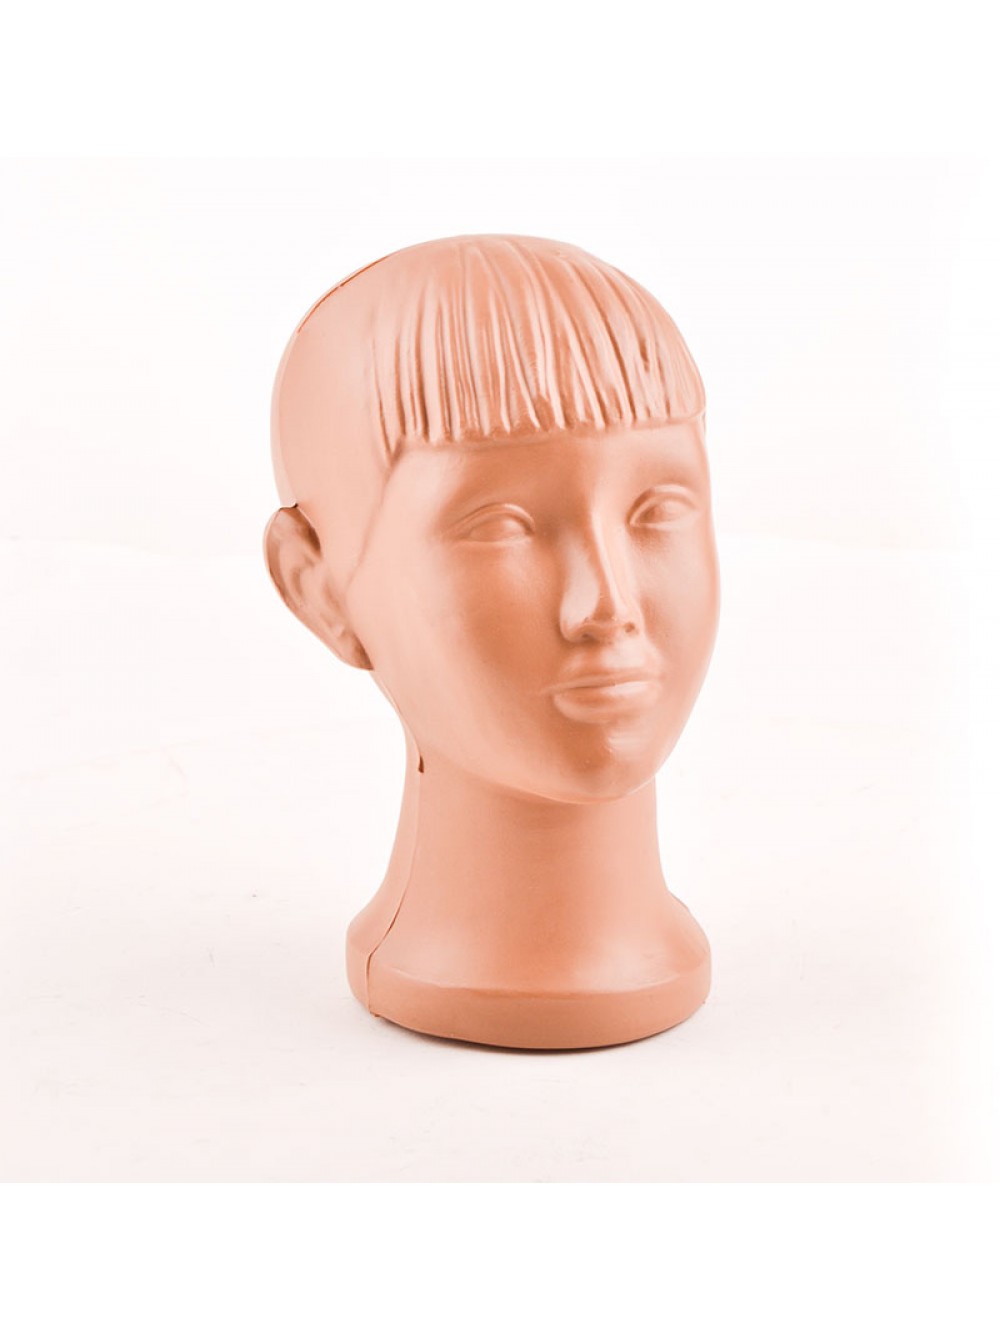 Мы предлагаем купить следующие виды манекенов-голов: